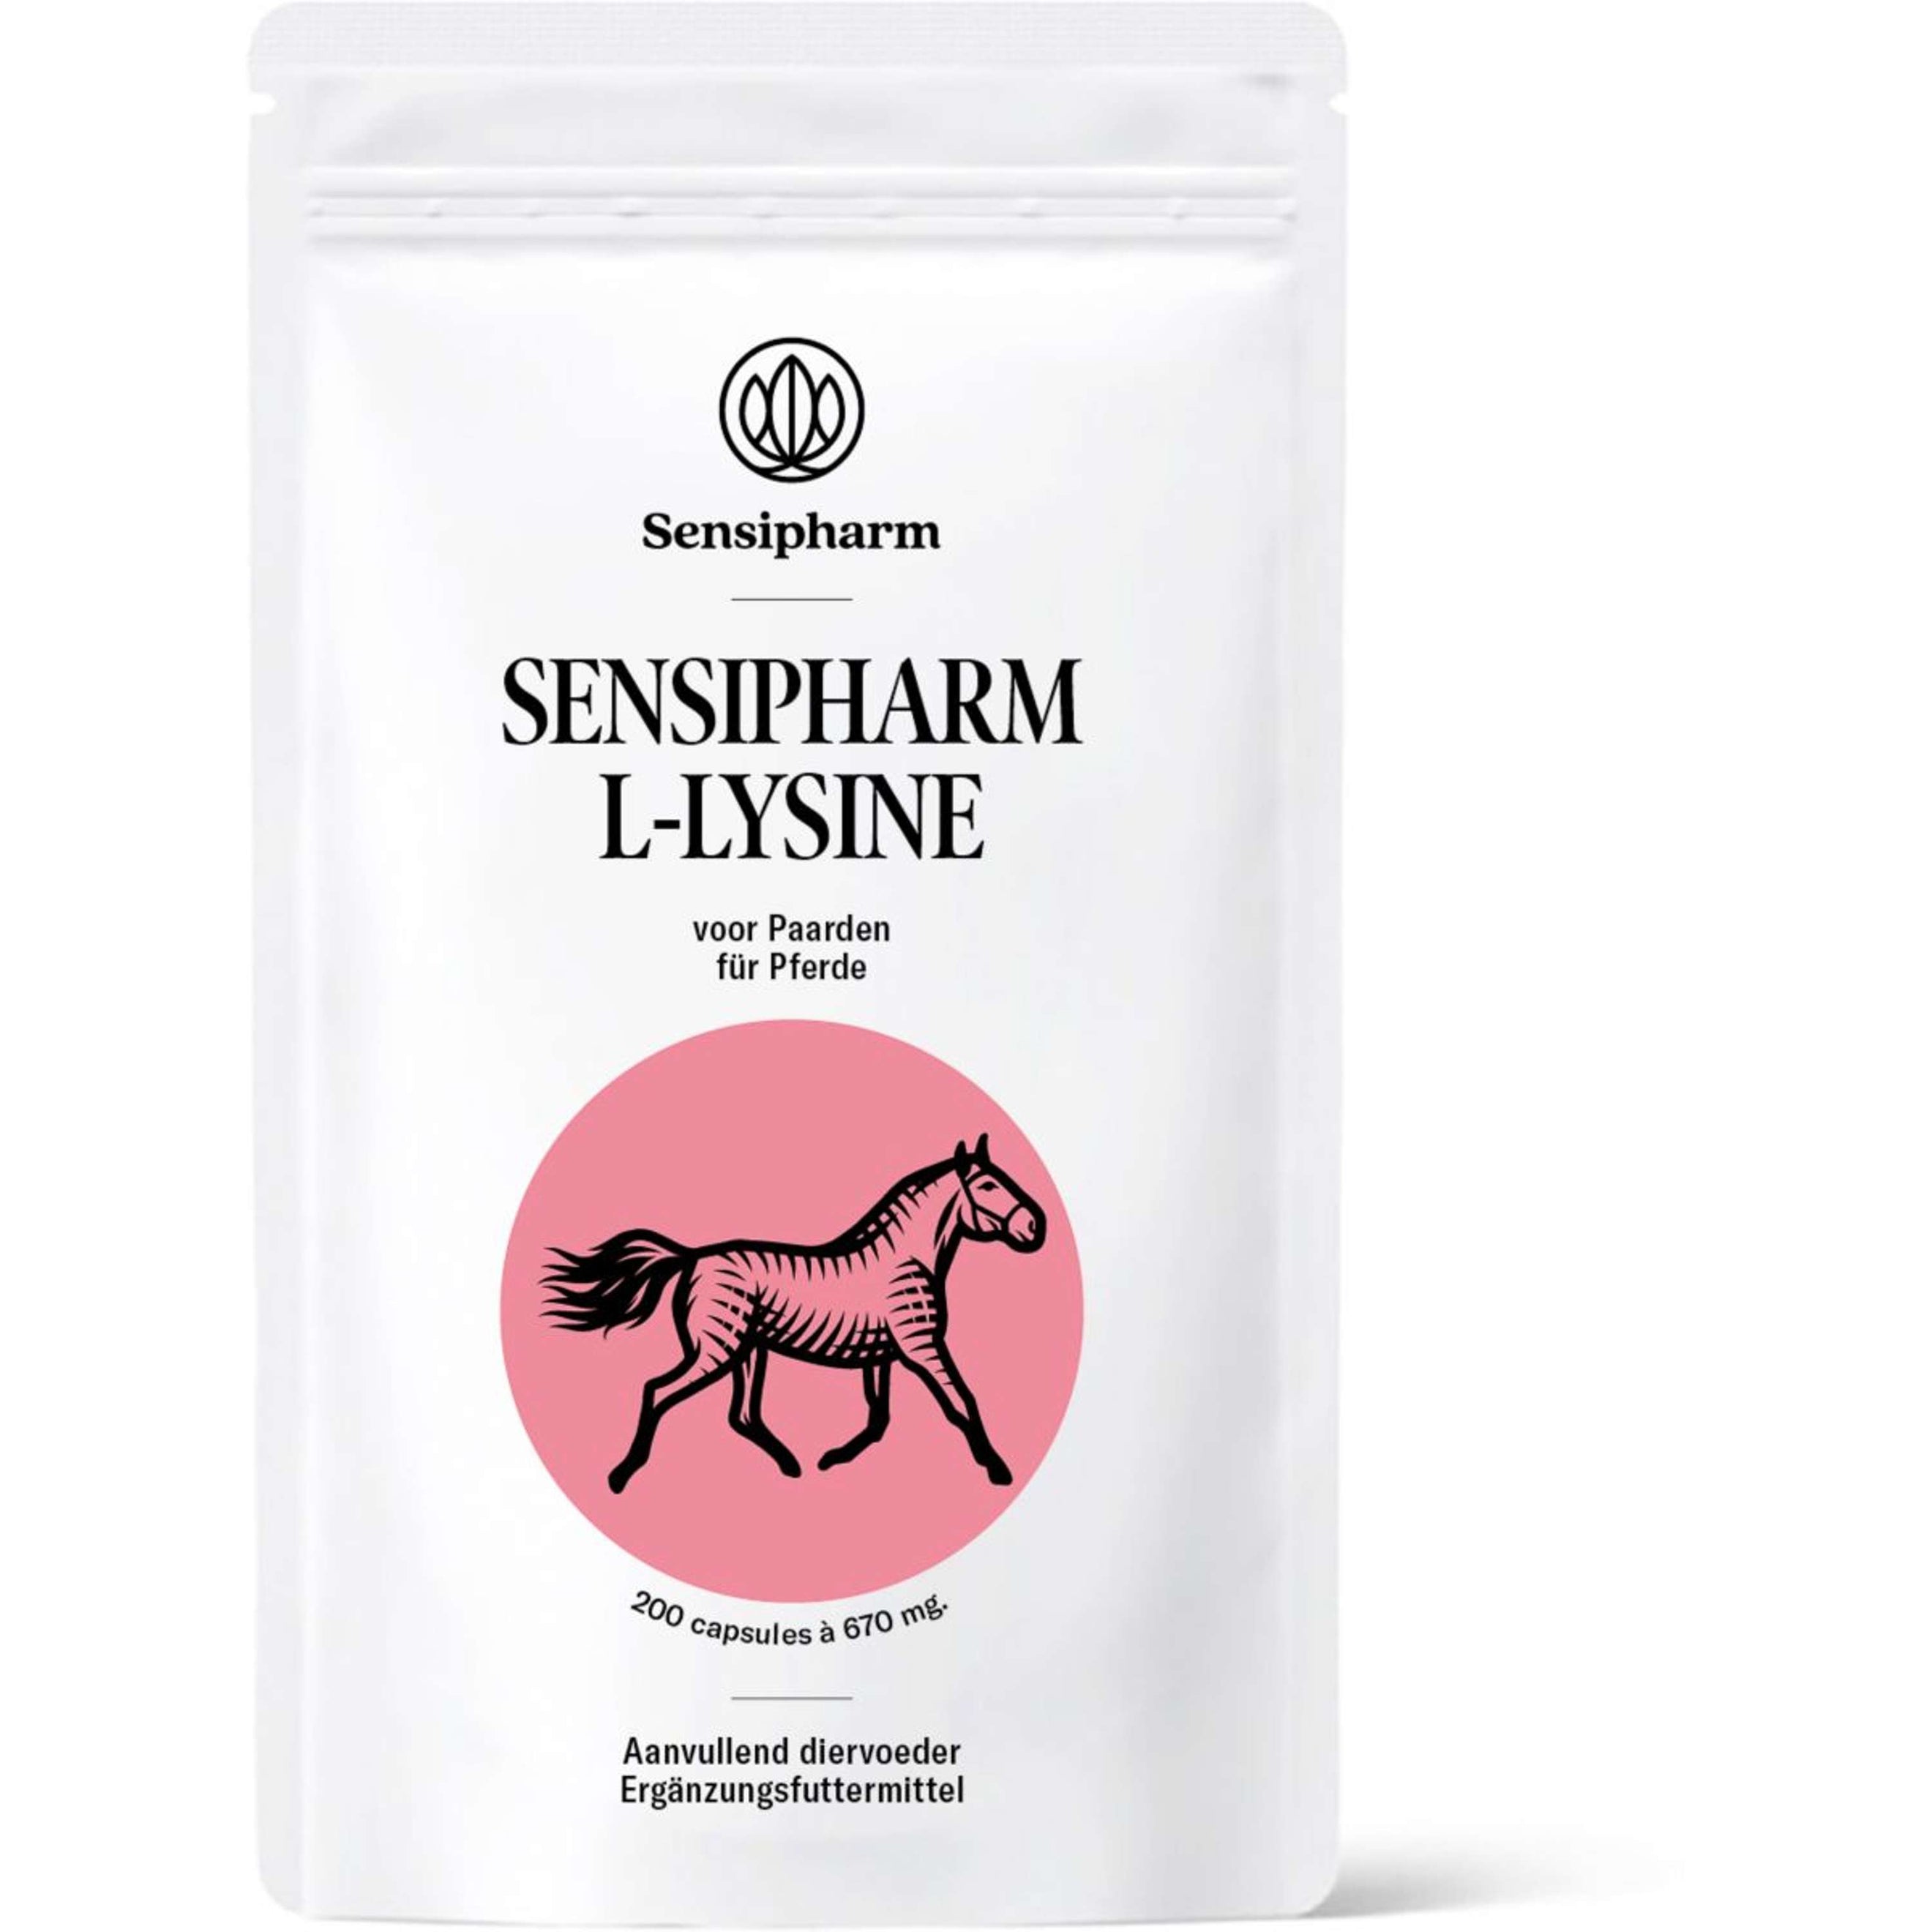 Sensipharm L-lysine Cheval